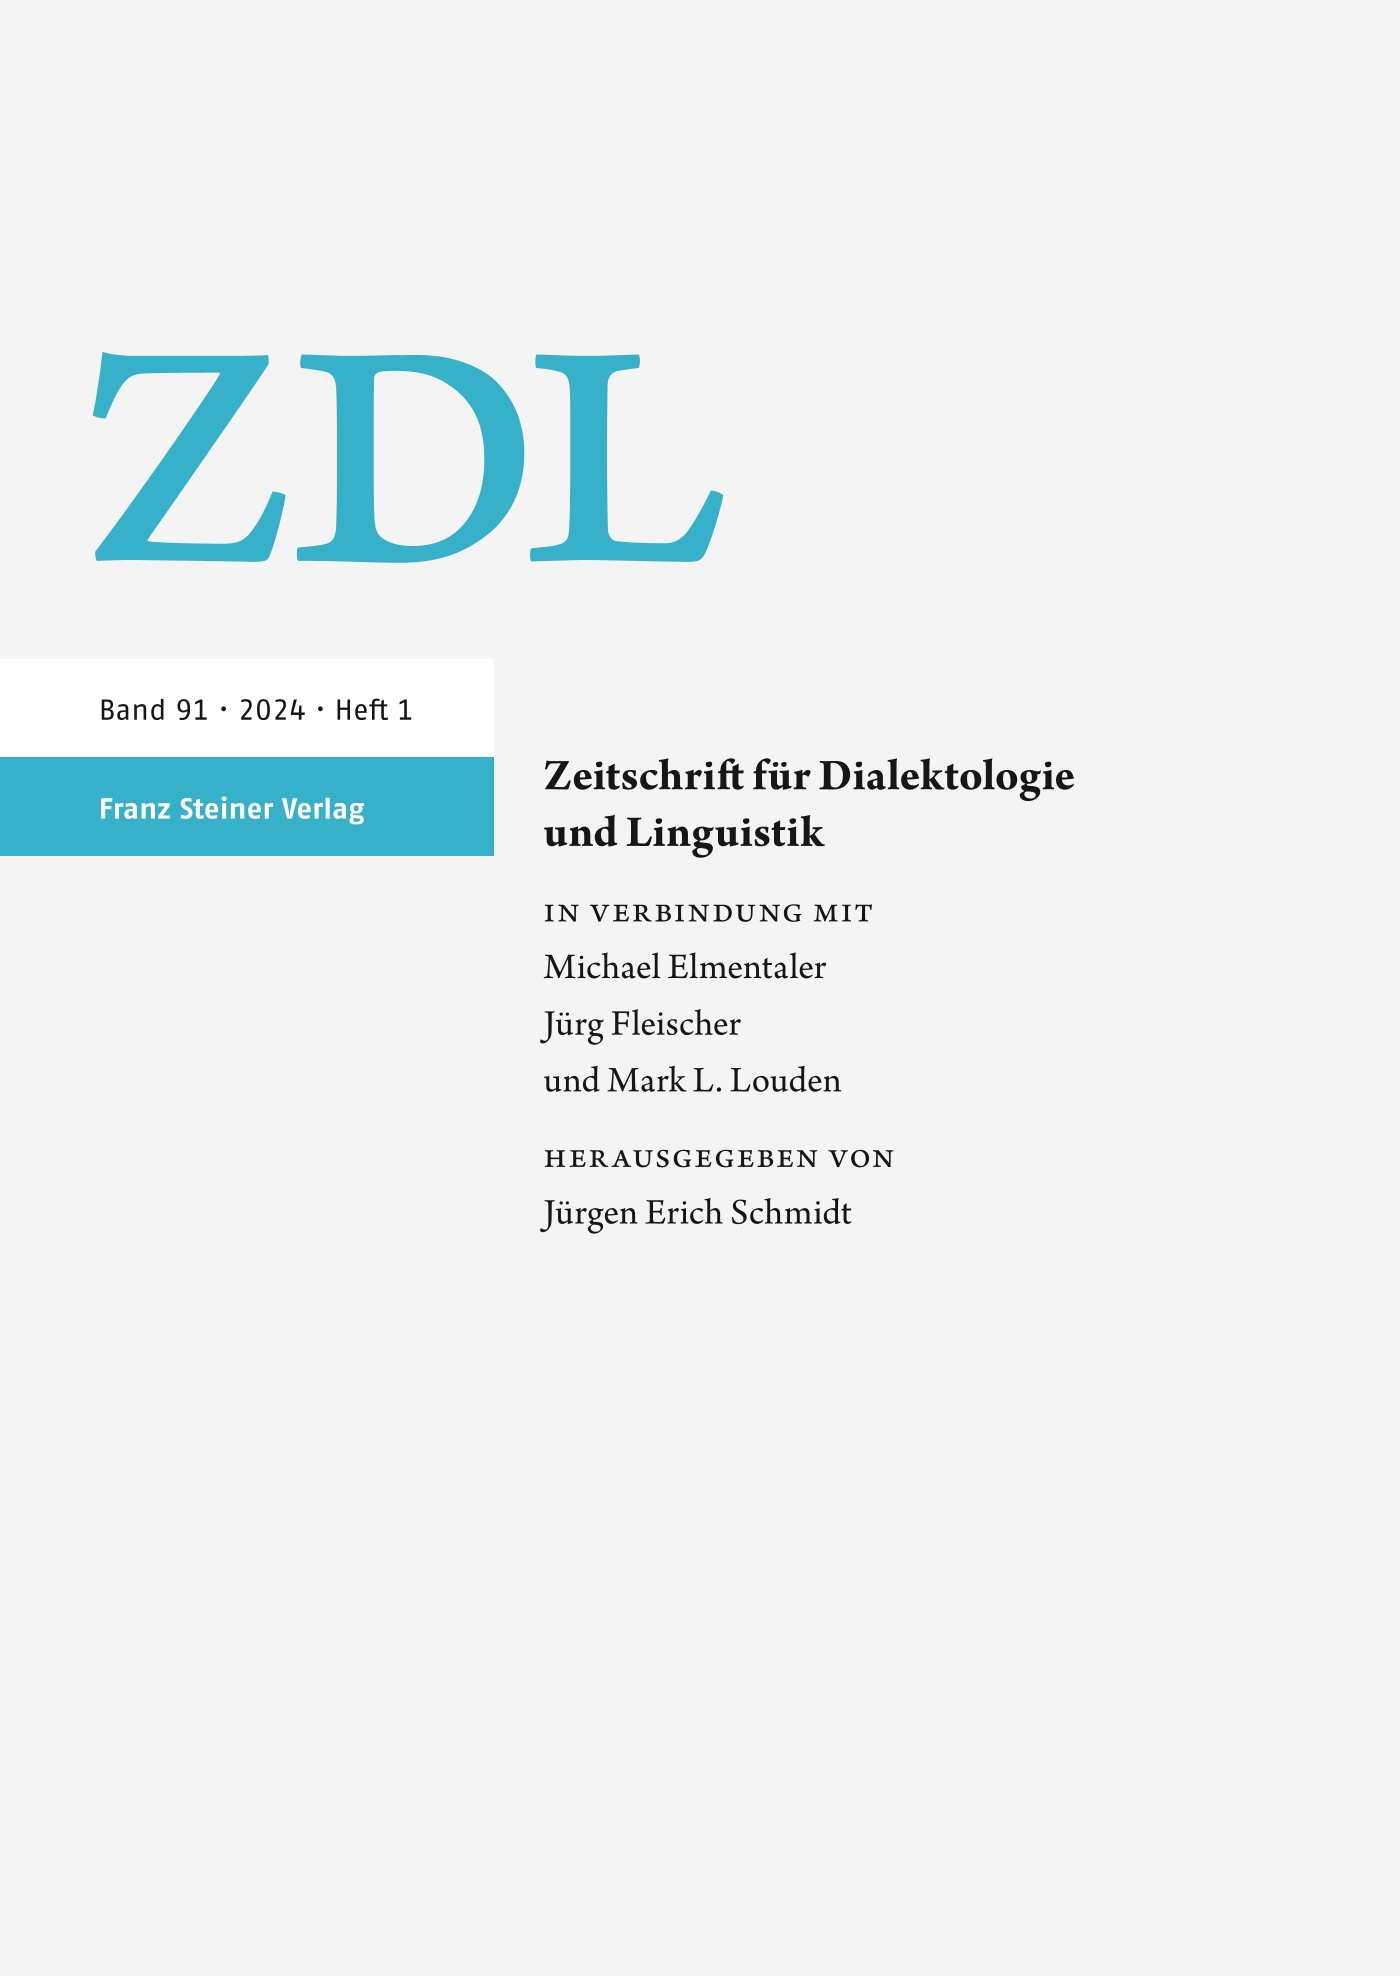 Zeitschrift für Dialektologie und Linguistik - print + online